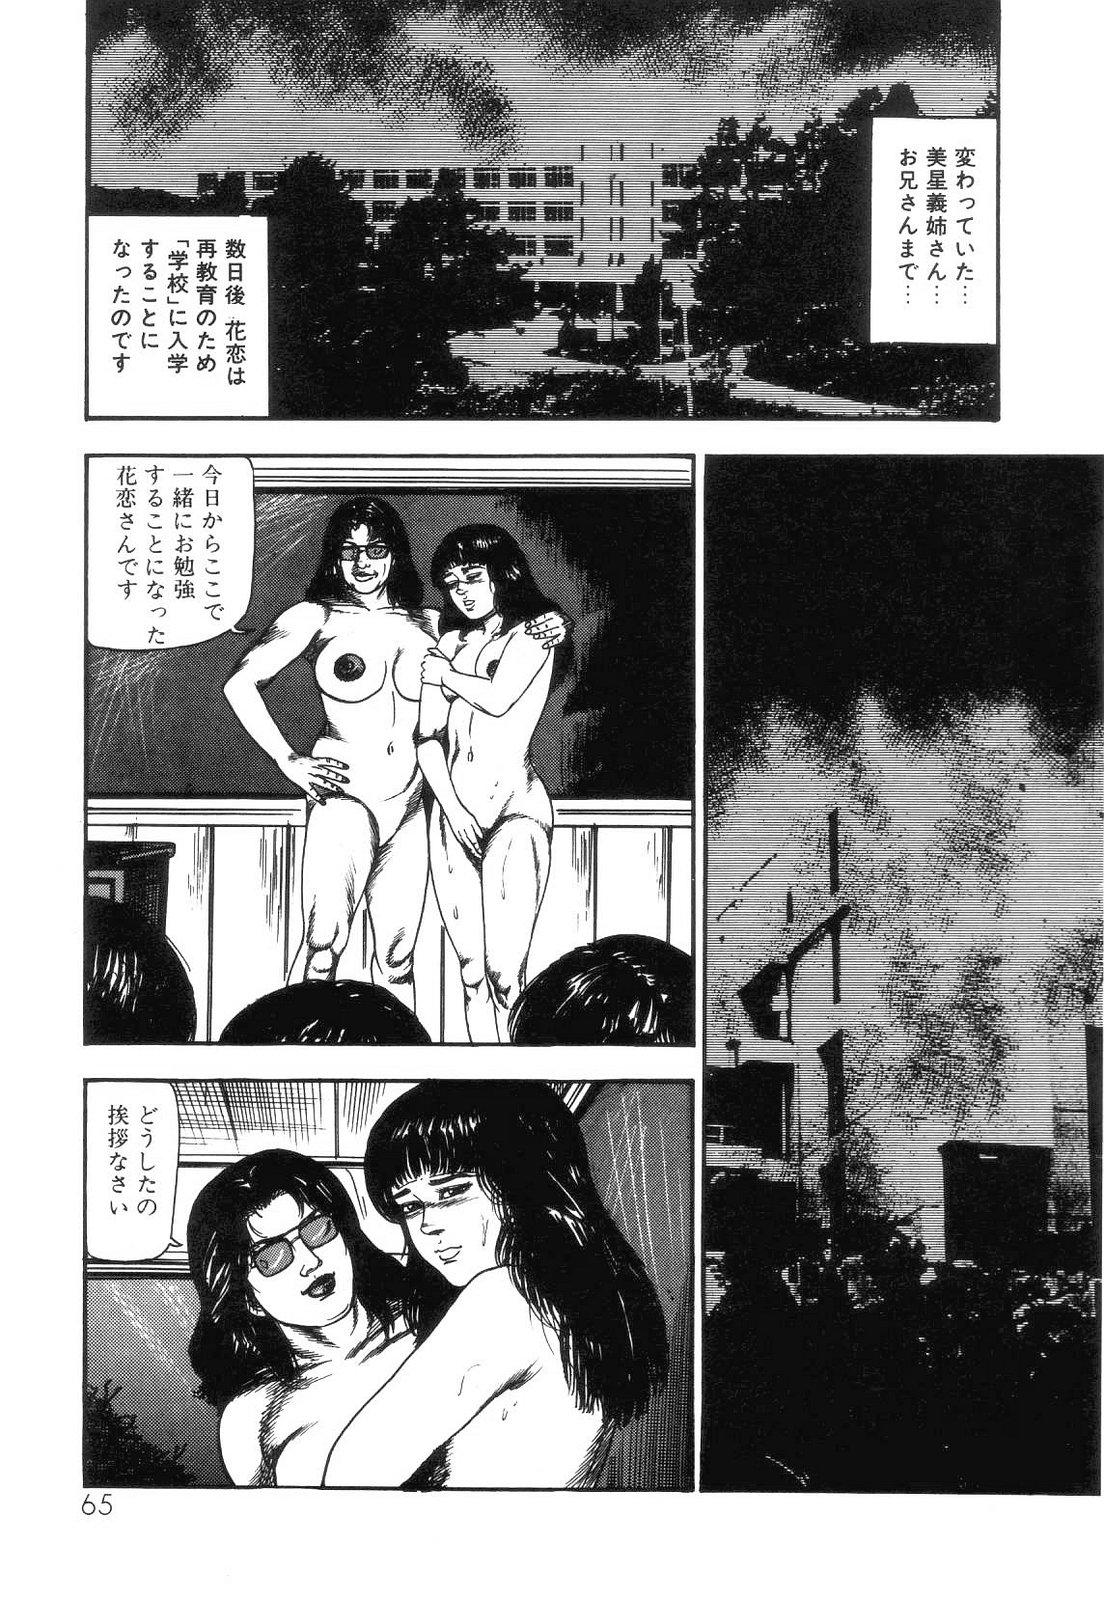 Shiro no Mokushiroku Vol. 4 - Bichiku Karen no Shou 67